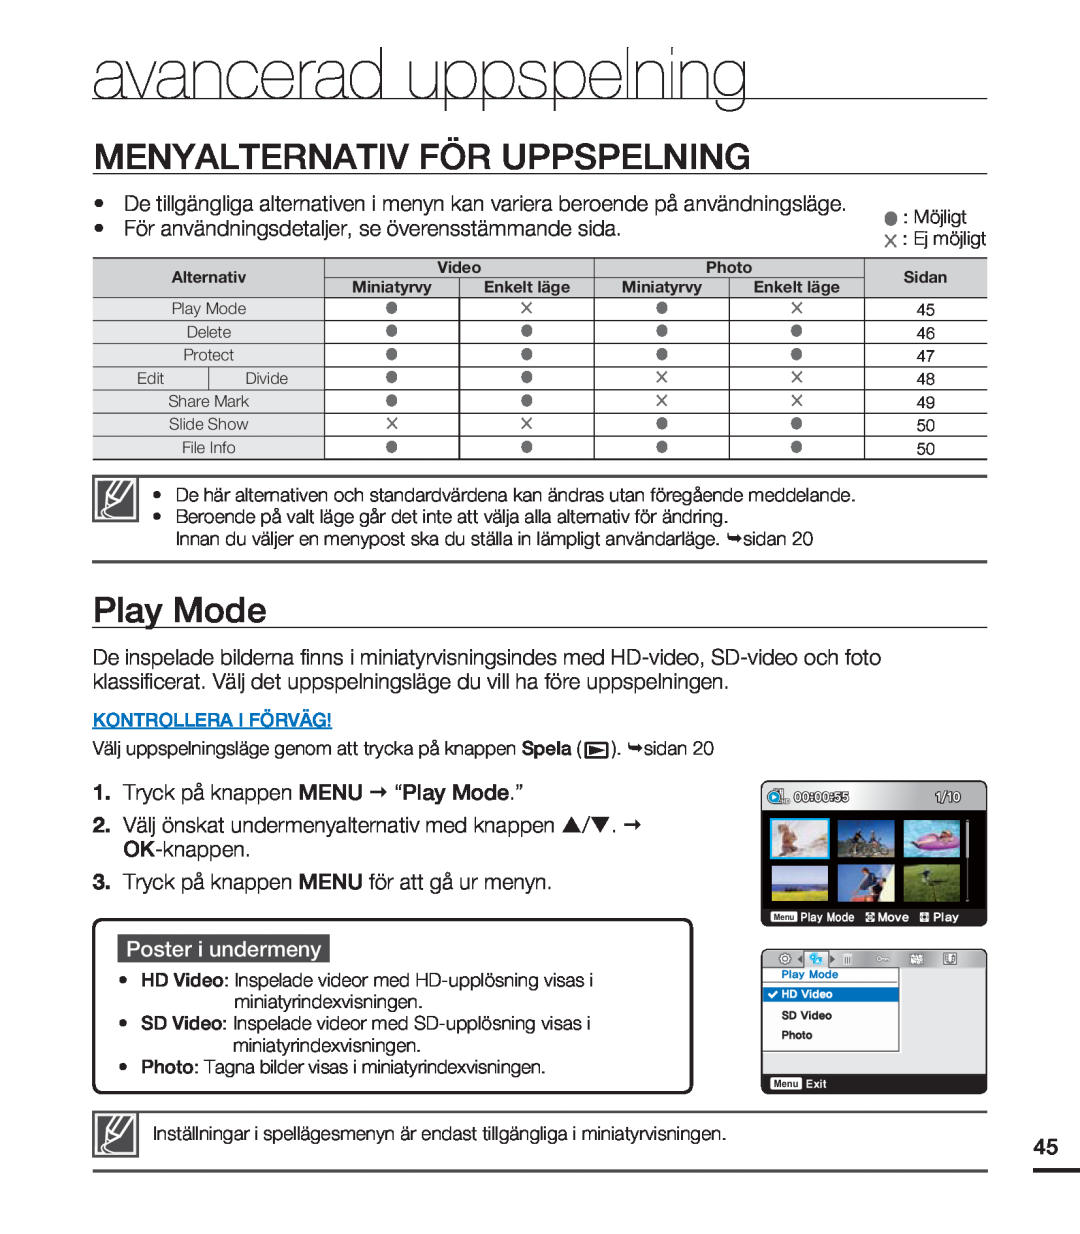 Samsung HMX-U20BP/EDC manual avancerad uppspelning, Menyalternativ För Uppspelning, Play Mode, Poster i undermeny 